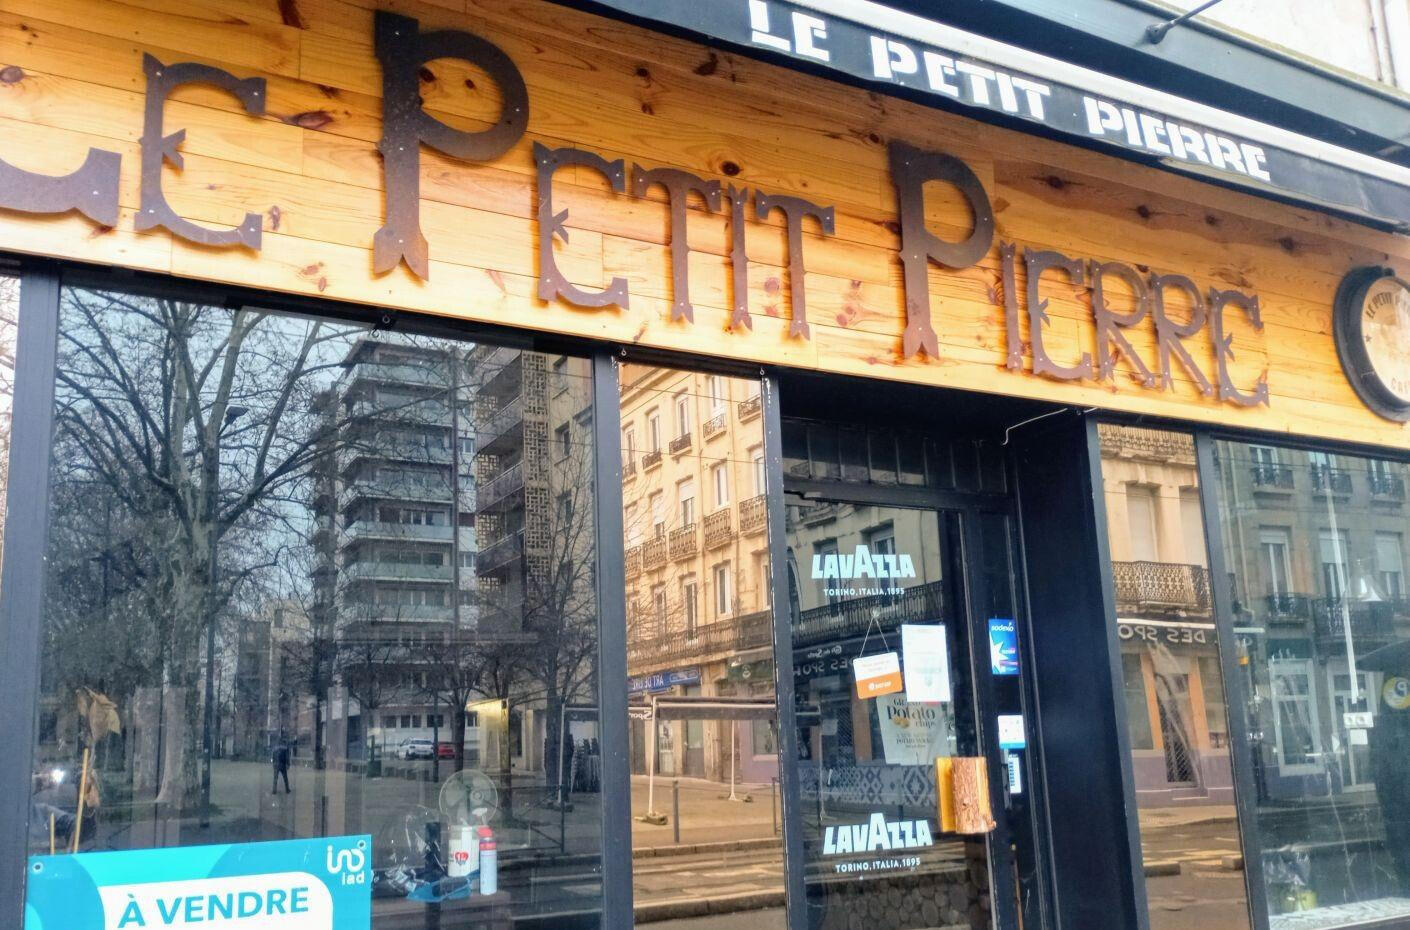 Vente bar rue Bergson à Saint-Étienne